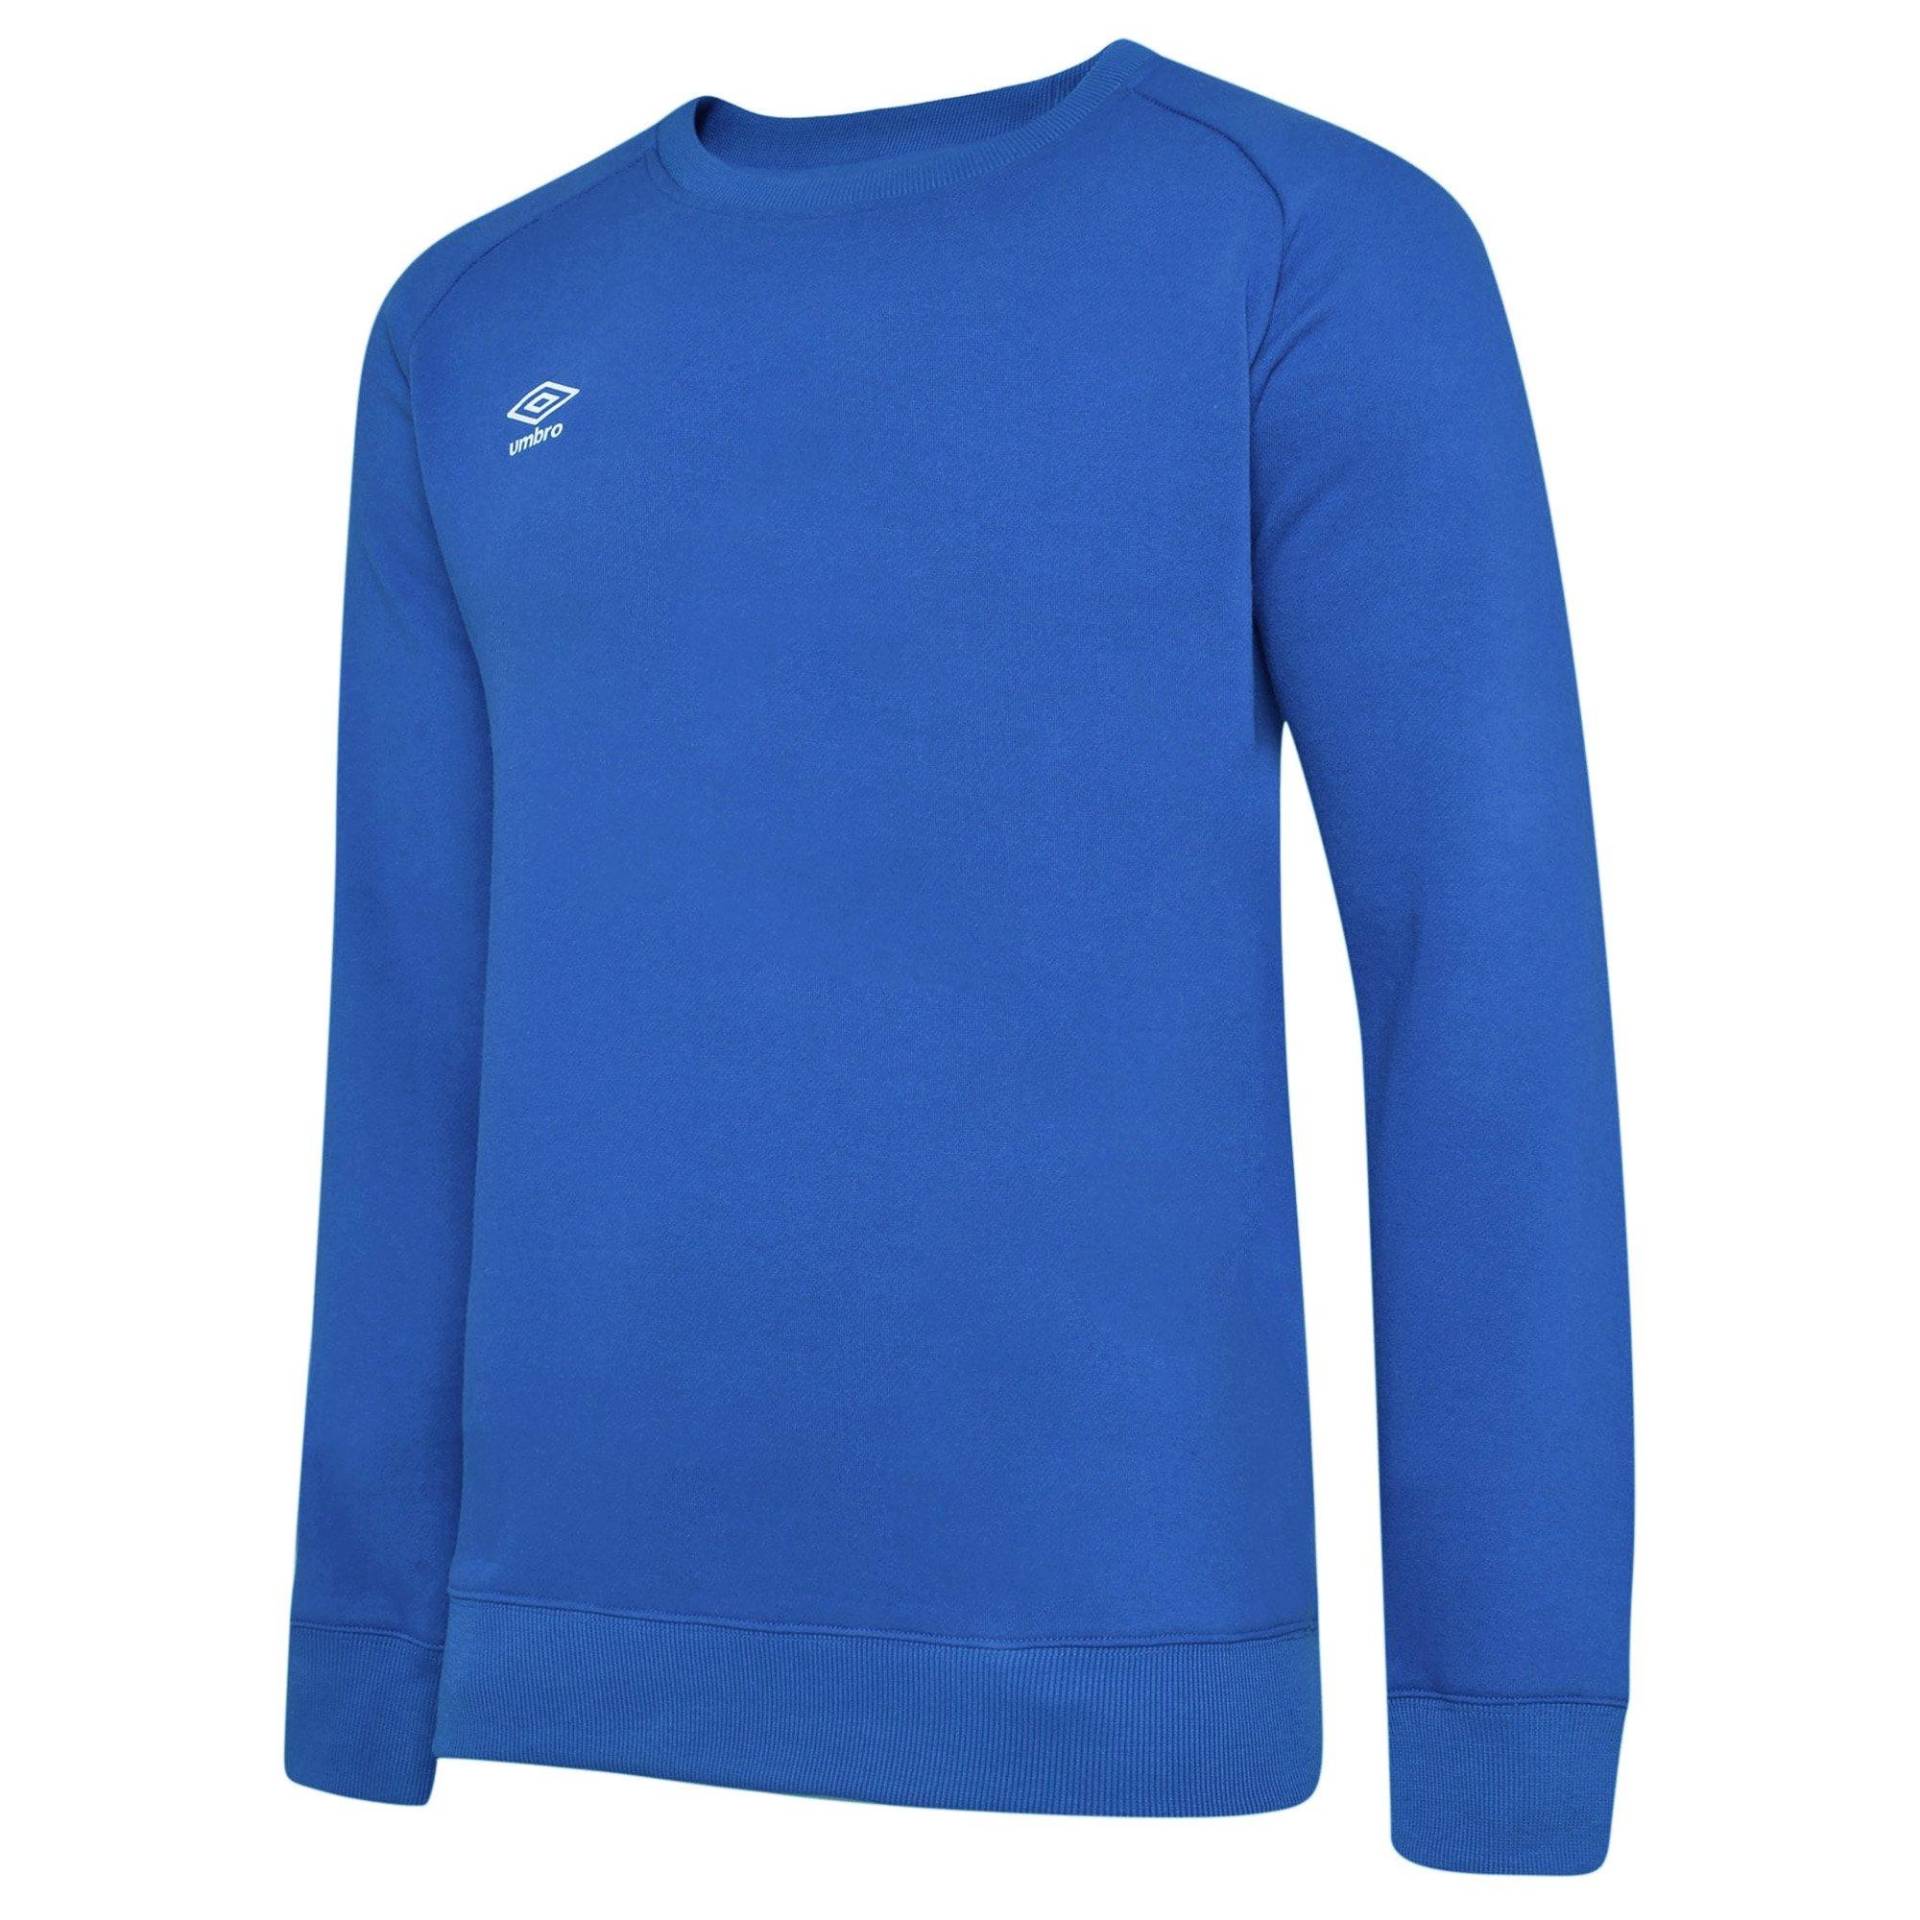 Club Leisure Sweatshirt Damen Blau L von Umbro